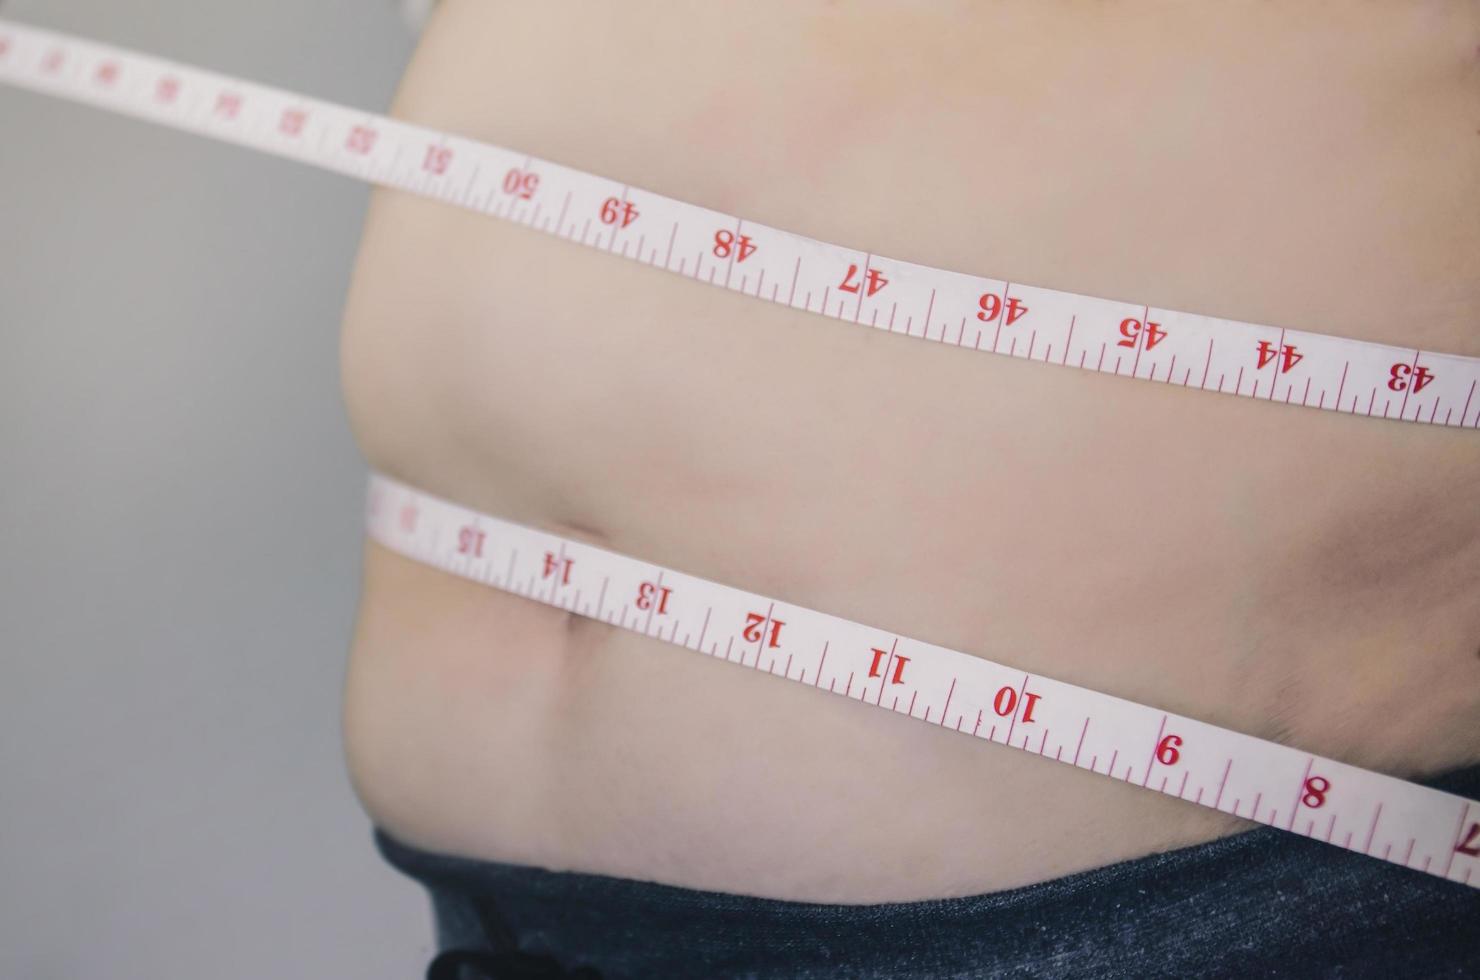 corpo humano e corpo gordo, pança ou barriga e excesso de peso das pessoas. foto